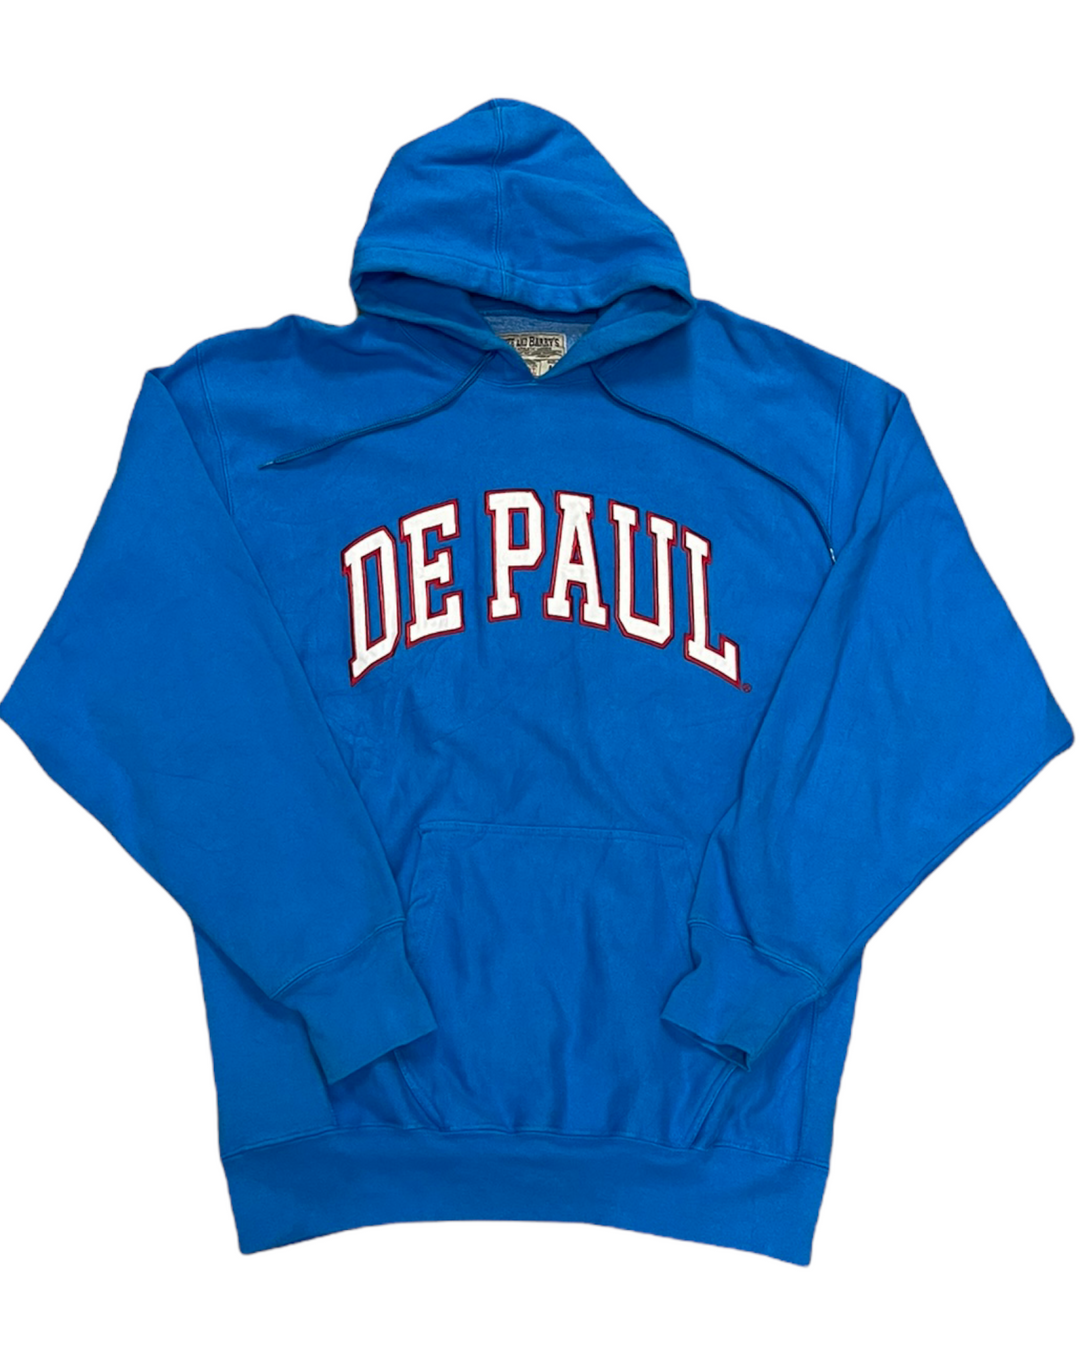 DePaul Vintage Sweatshirt